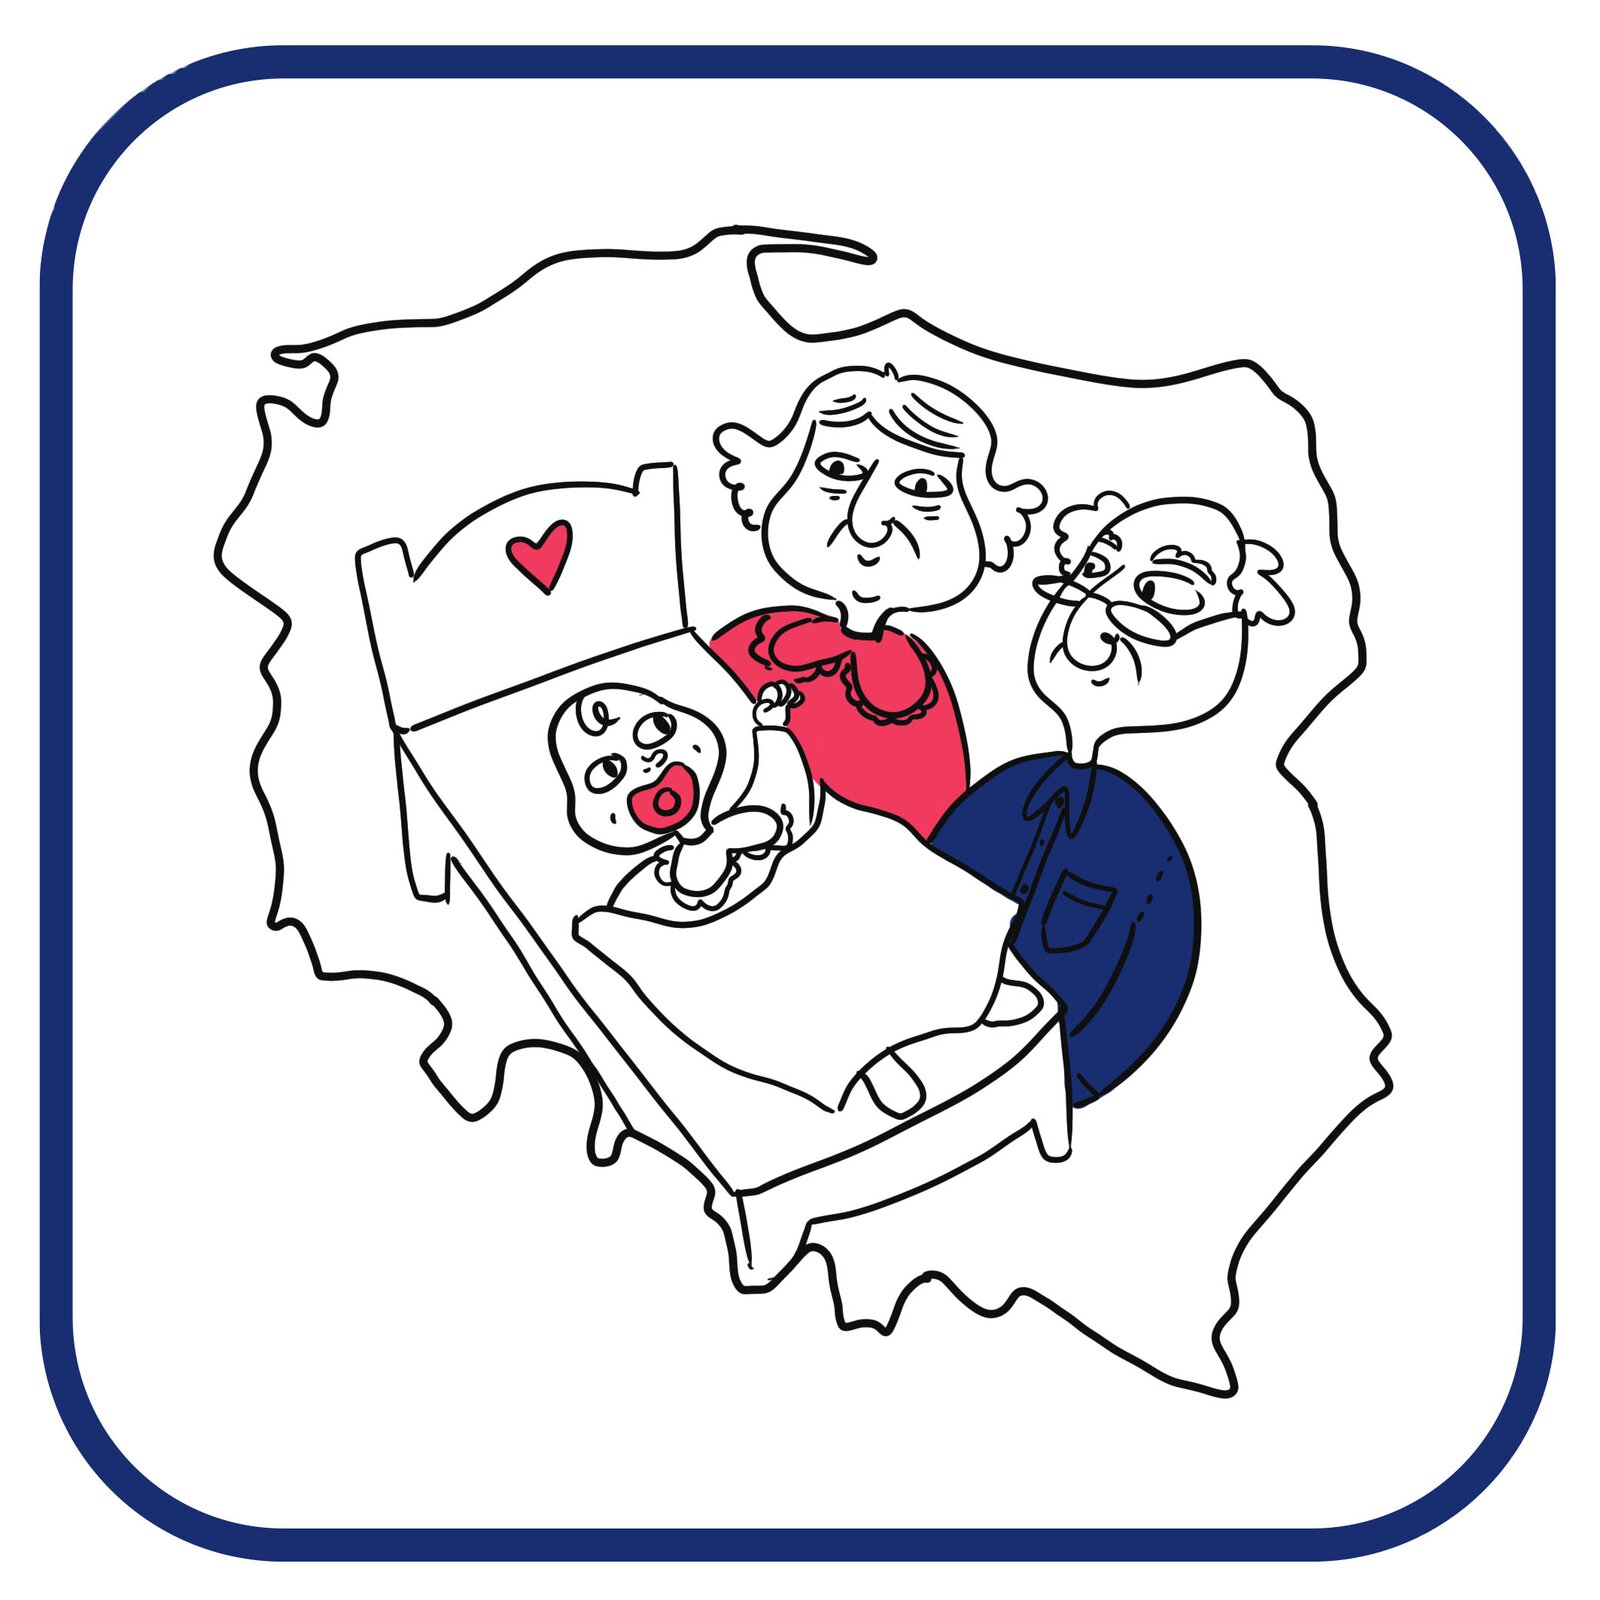 Kontur mapy Polski. W środku mapy rysunek noworodka leżącego w łóżeczku. Obok niego uśmiechnięci babcia z dziadkiem.